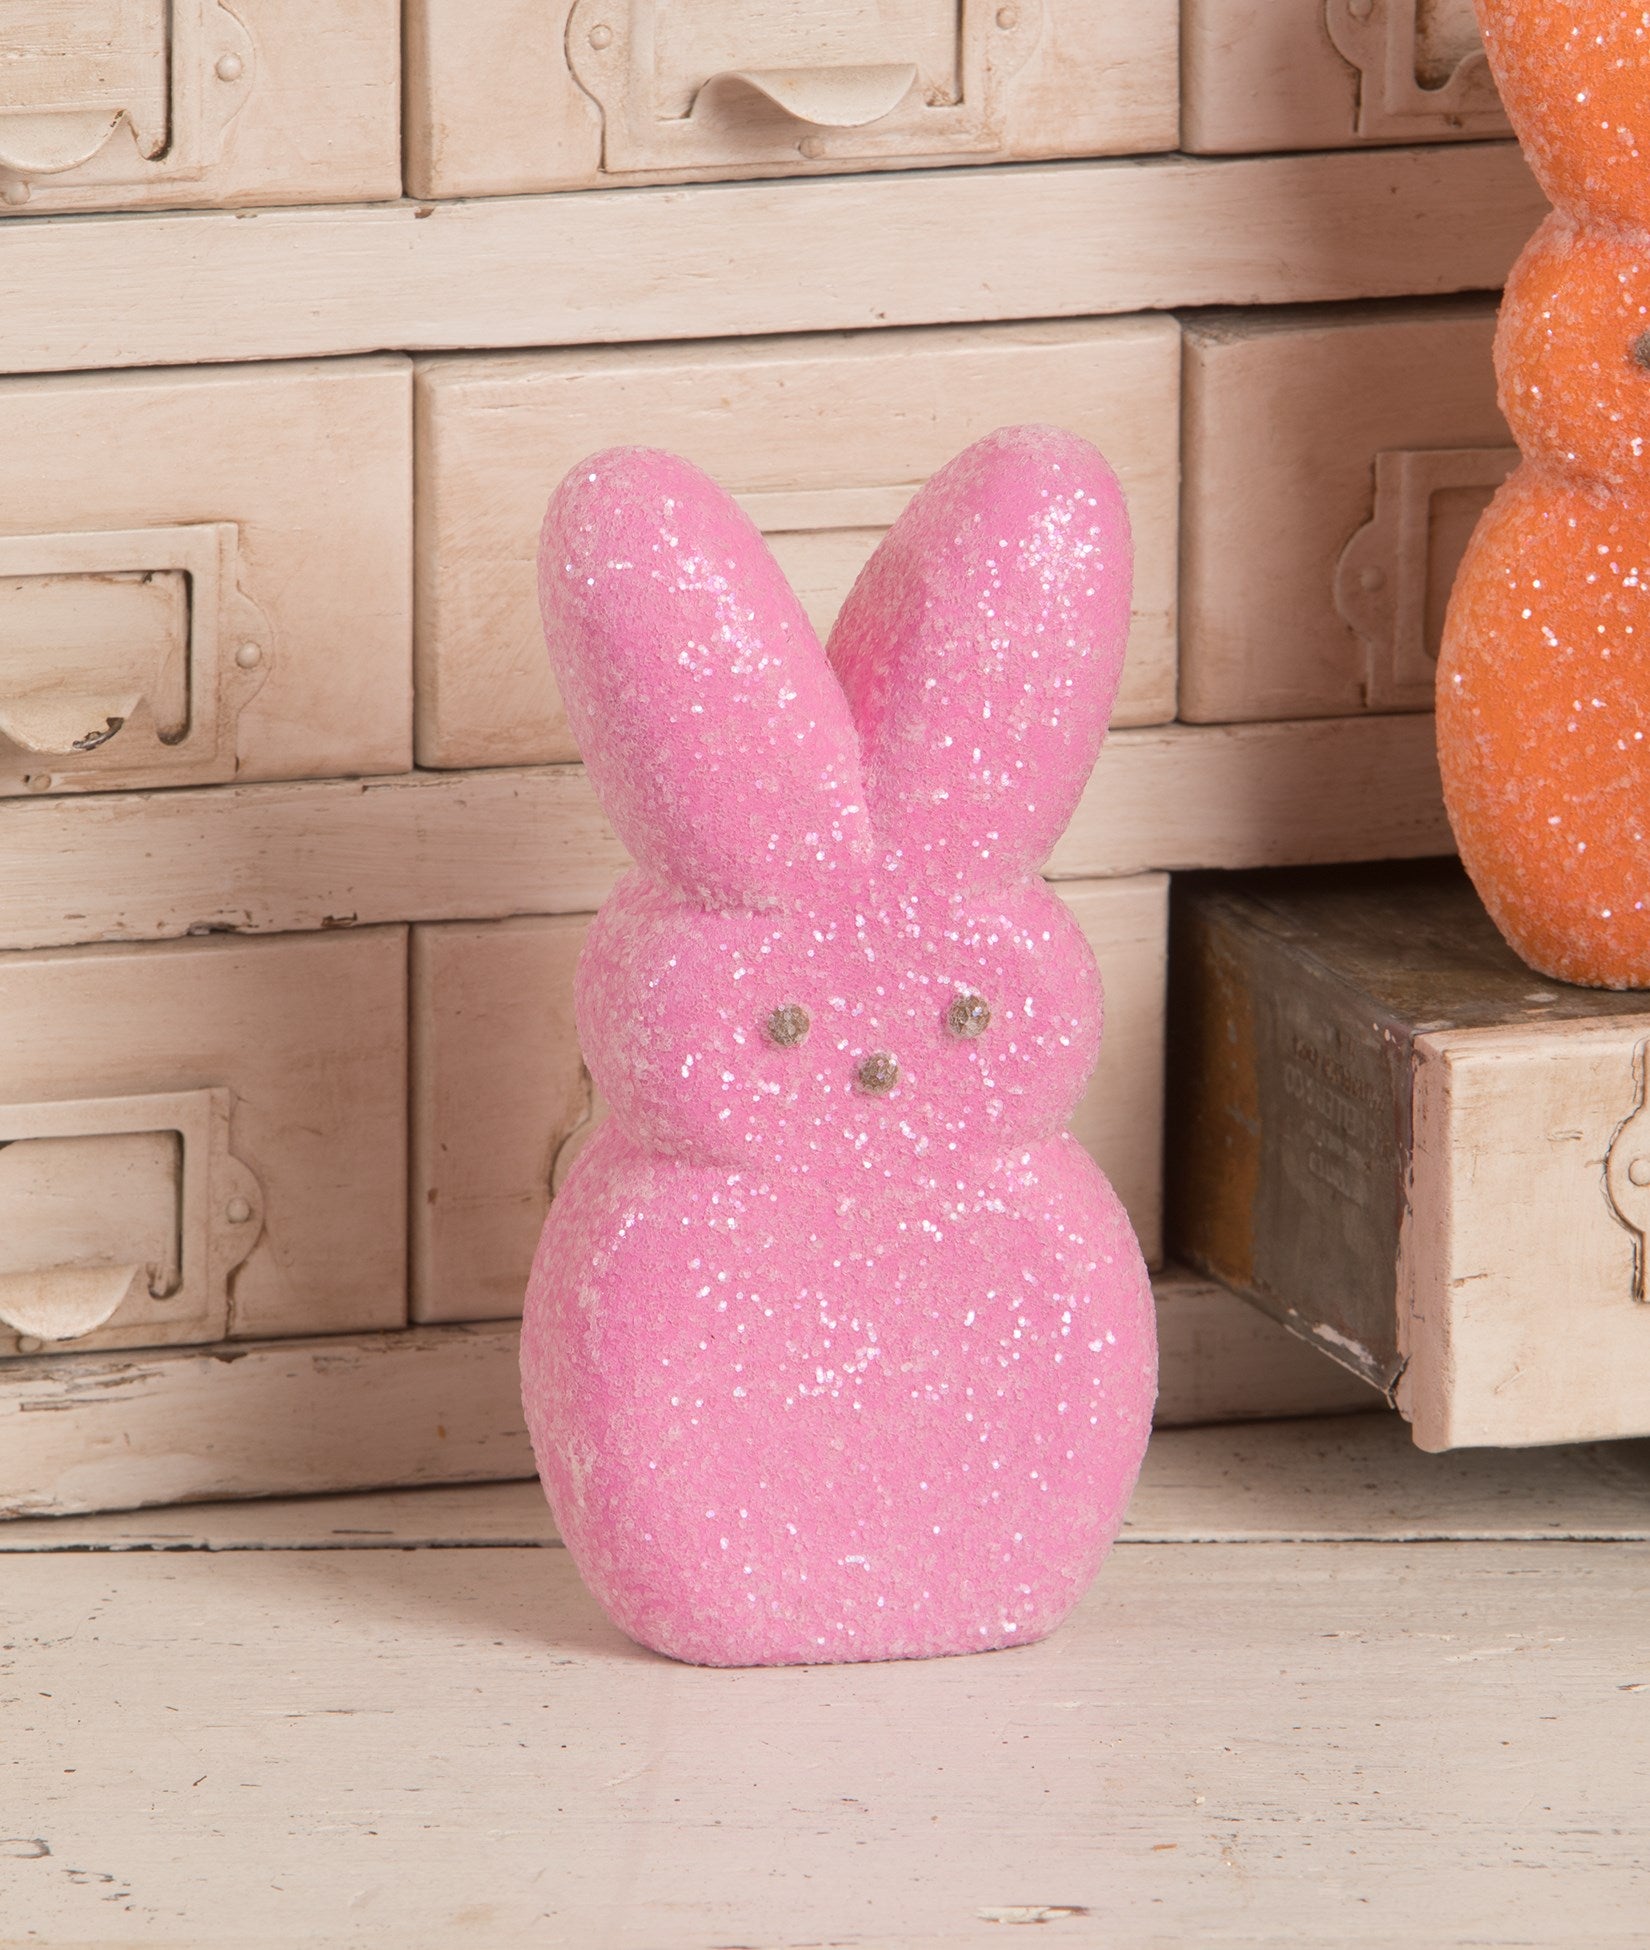 Peeps® Pink Bunny Figurine, 6"